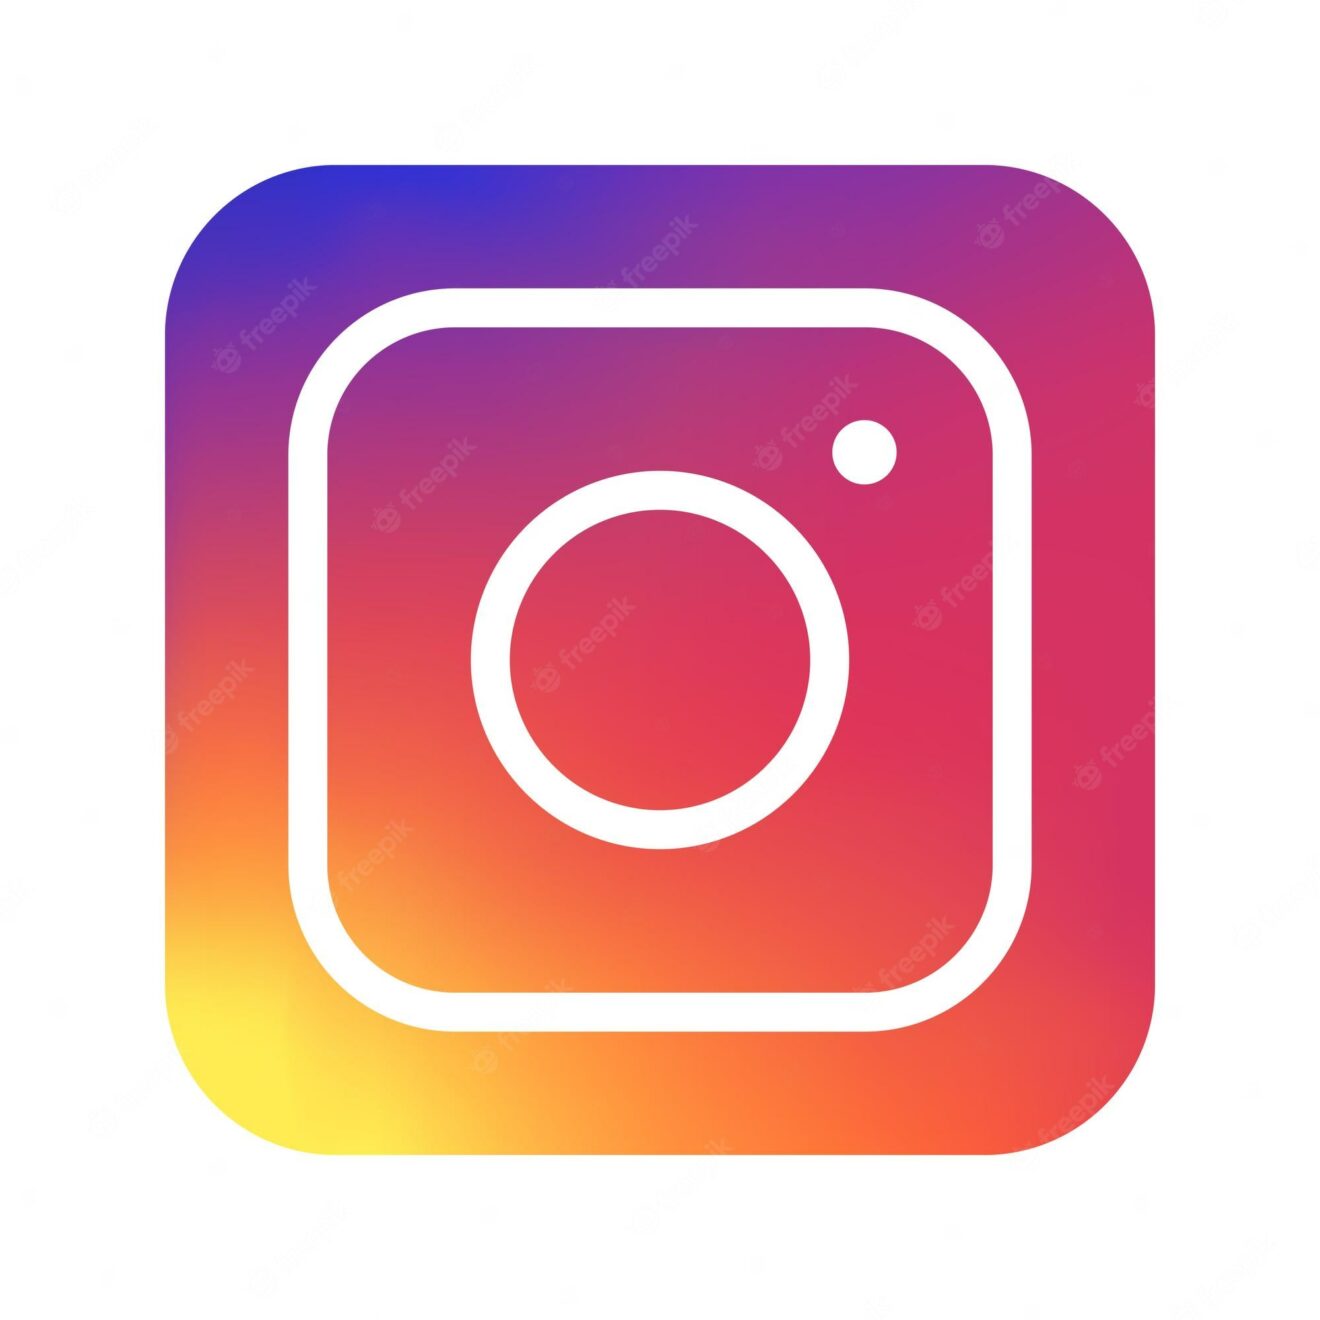 La nueva cuenta de Instagram